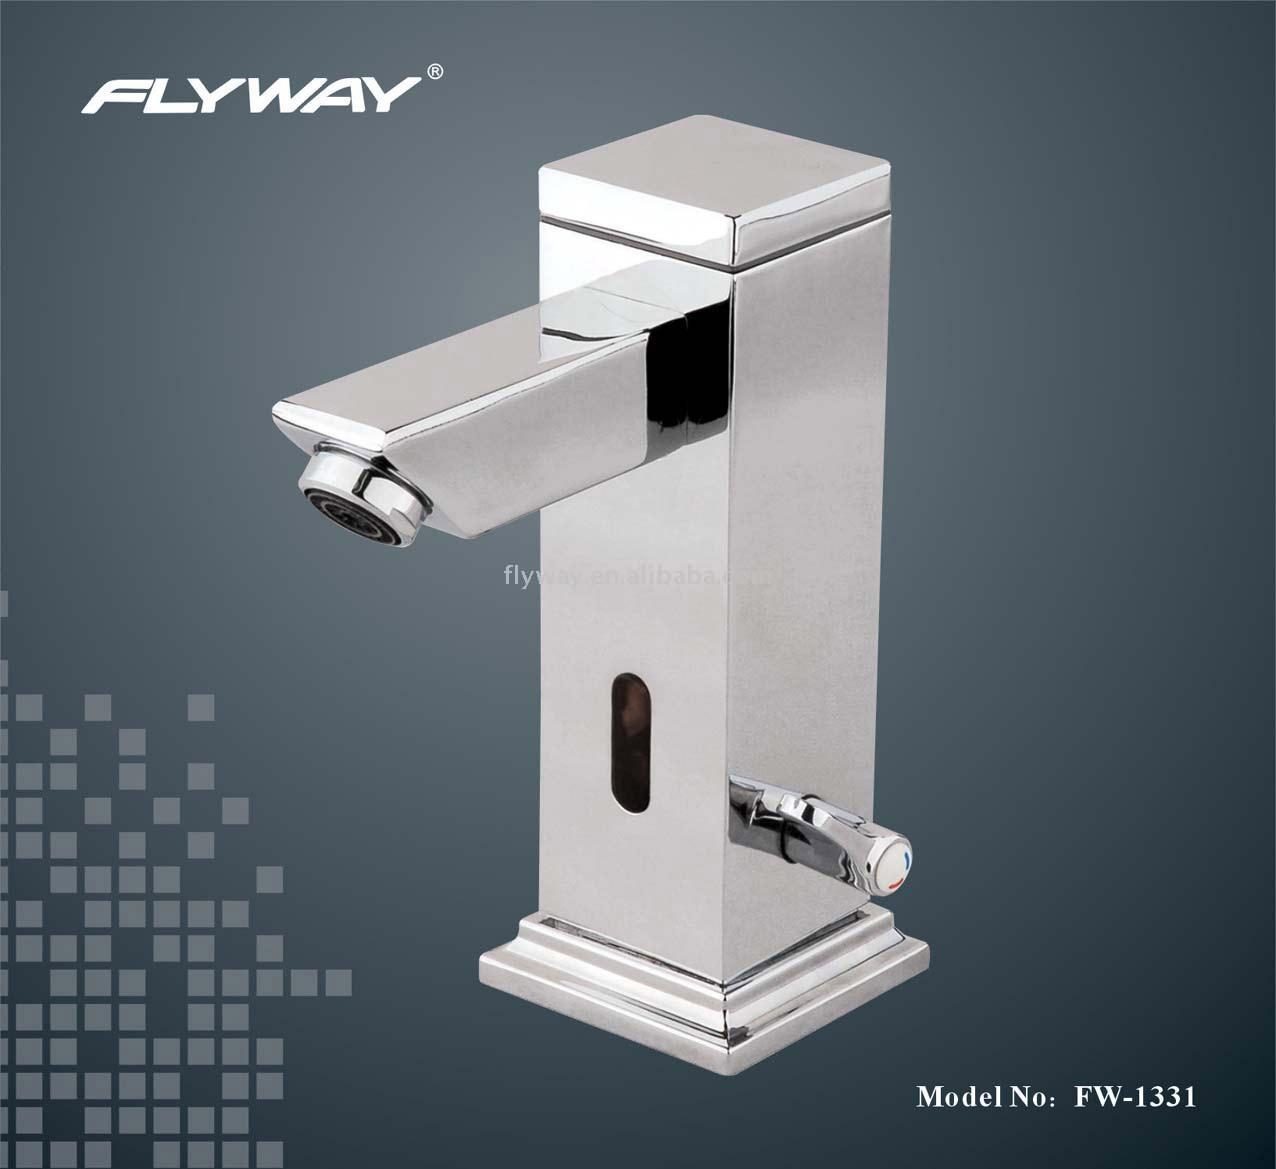  2 -Part System Automatic Sensing Faucet (2-часть Системы автоматического зондирования кран)